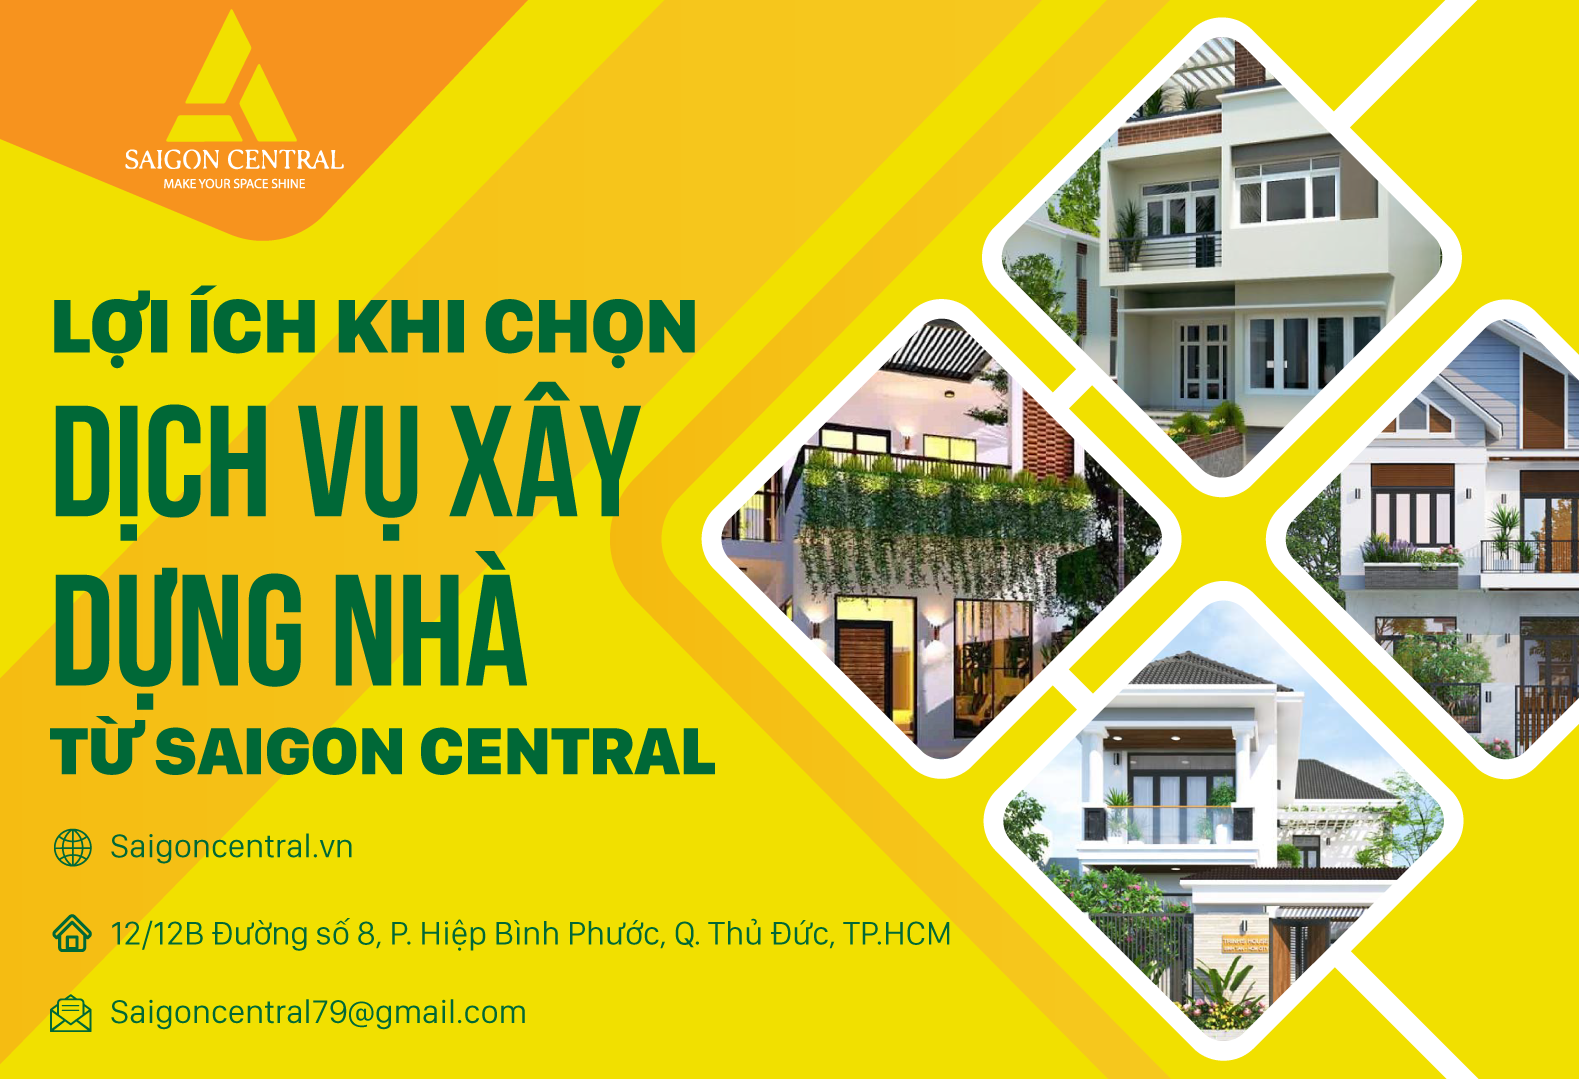 Lợi ích khi chọn dịch vụ xây dựng nhà từ Saigon central